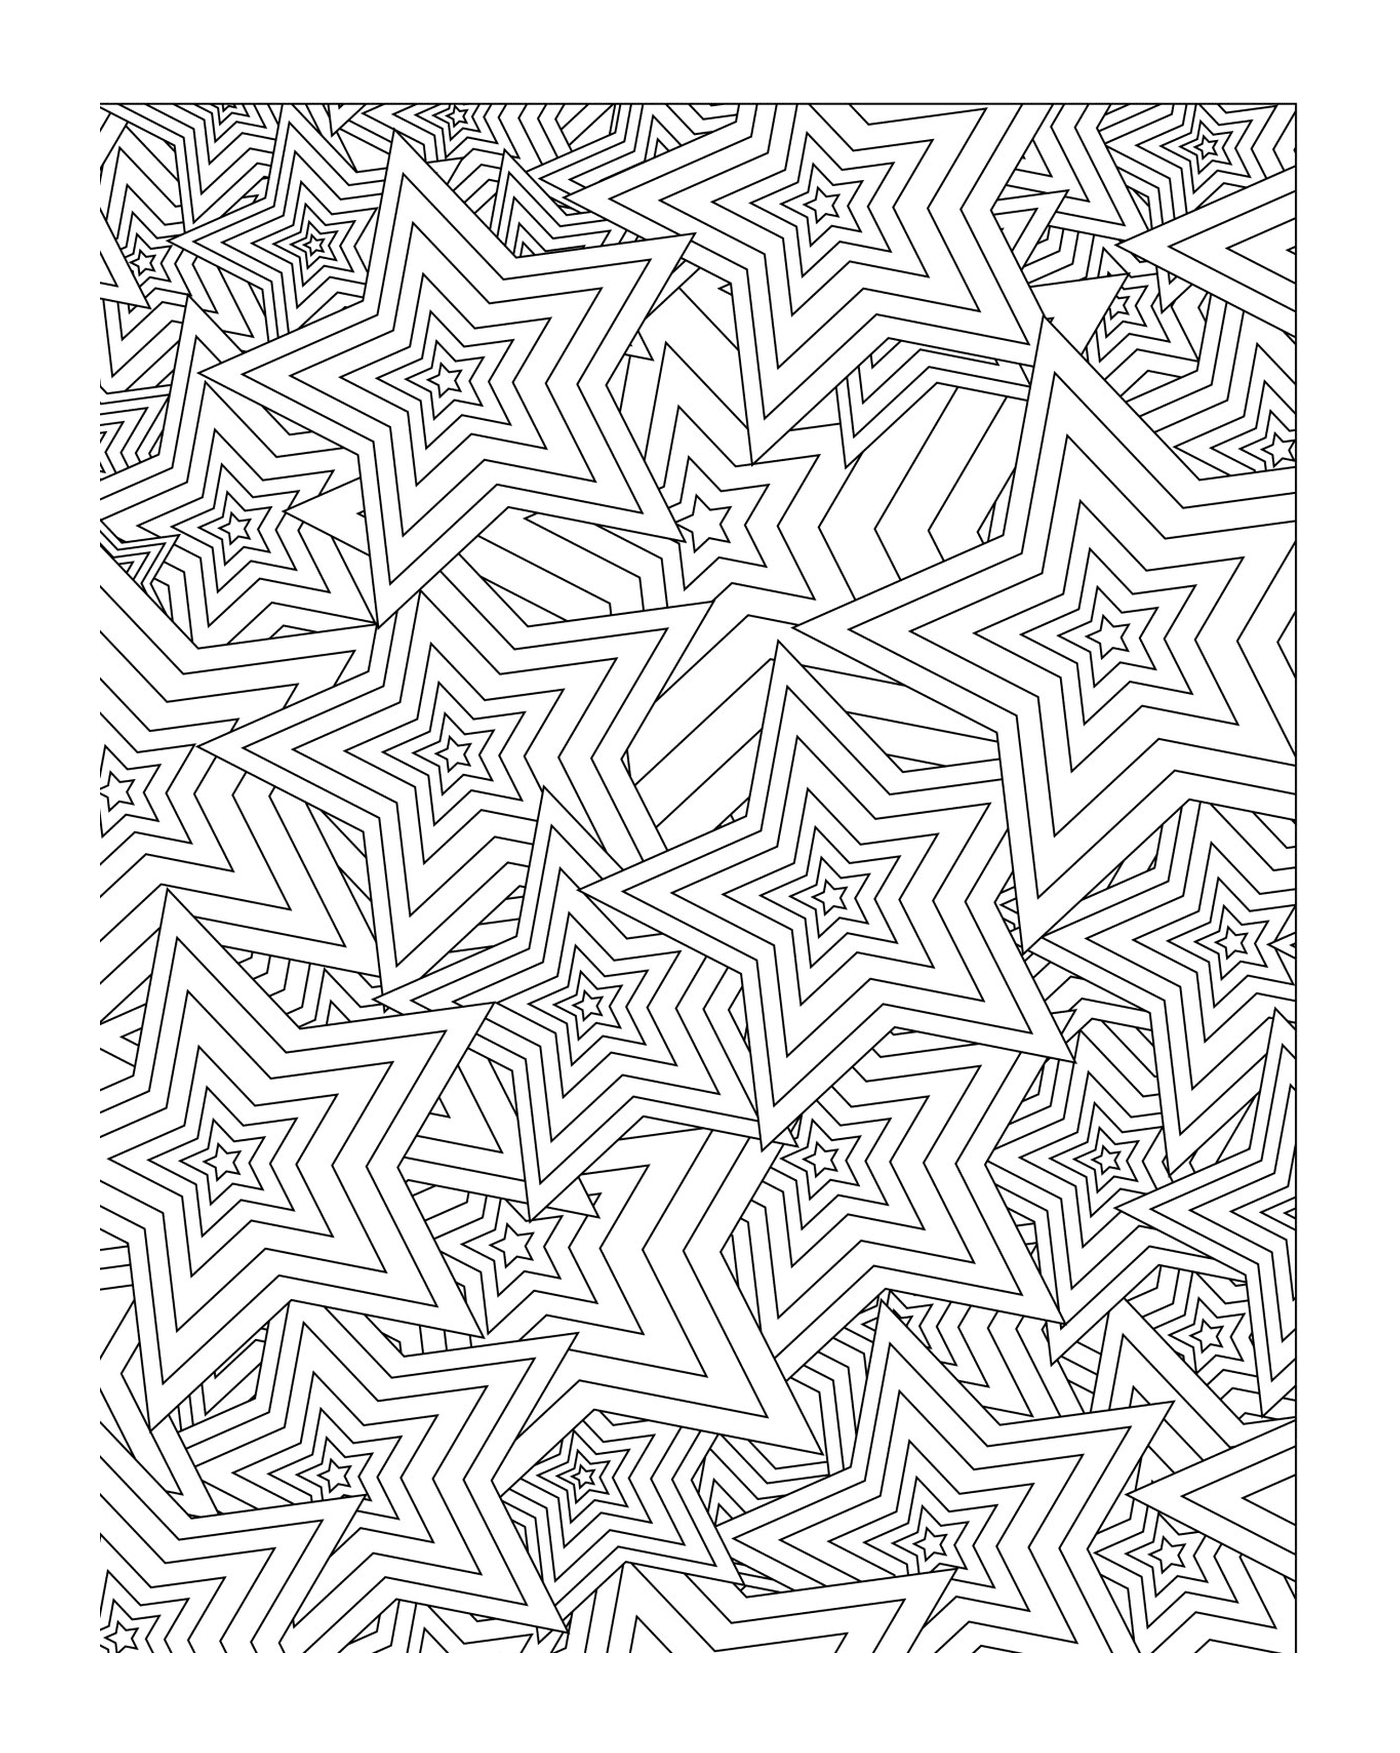  A mandala-shaped star pattern 